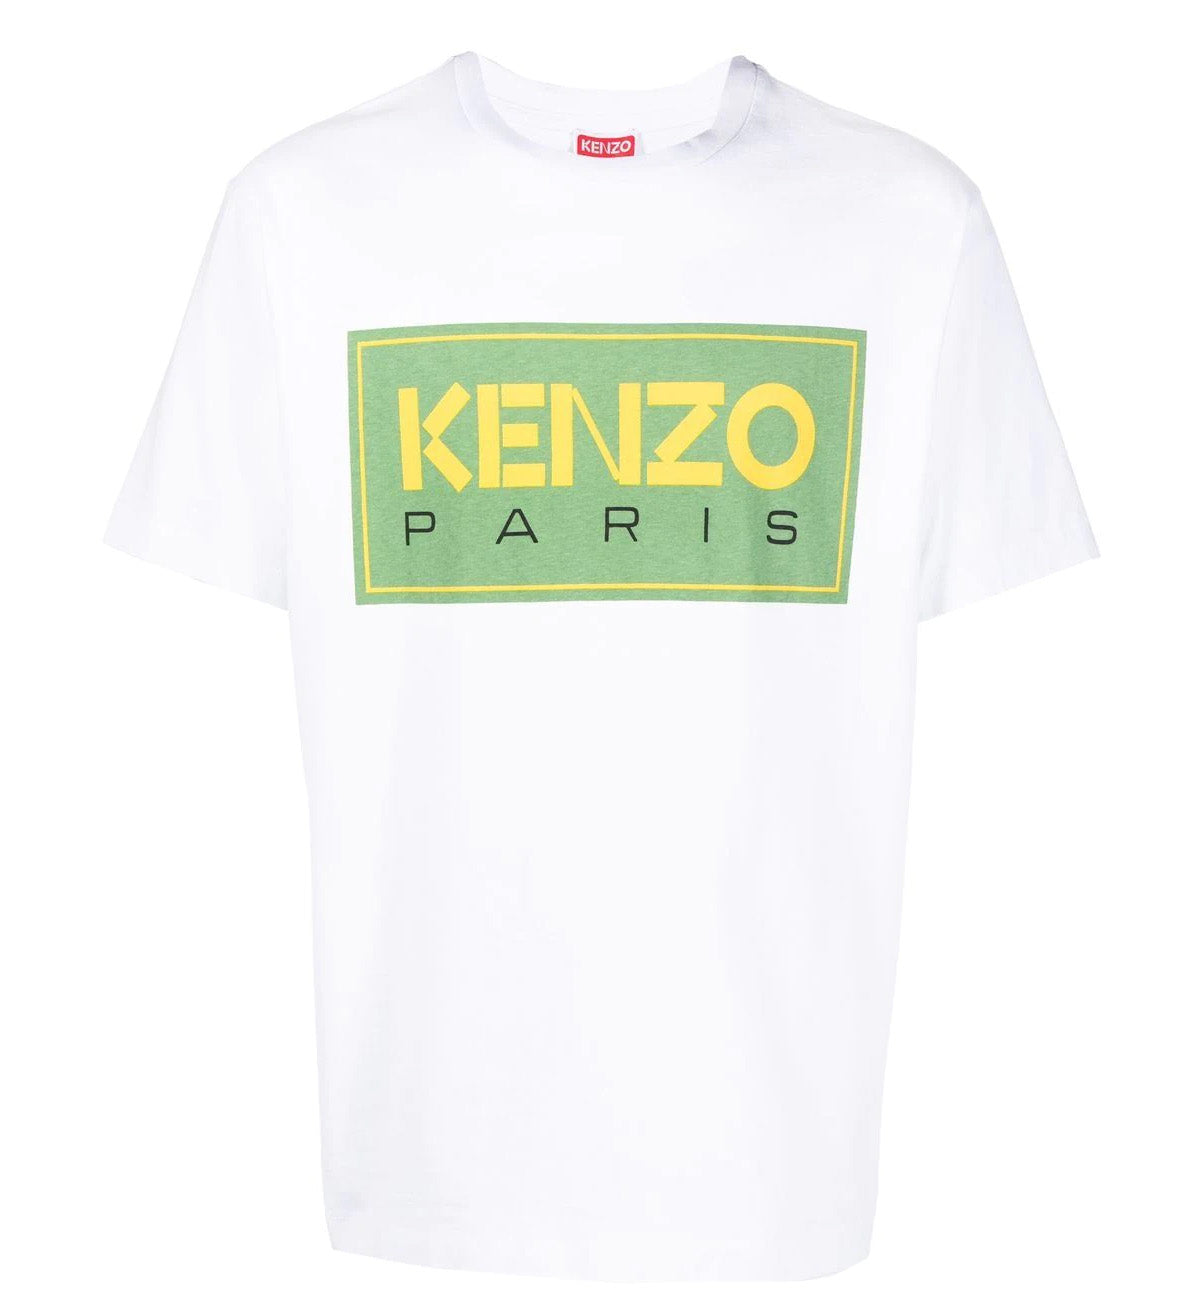 Kenzo Paris Logo Tee (White)